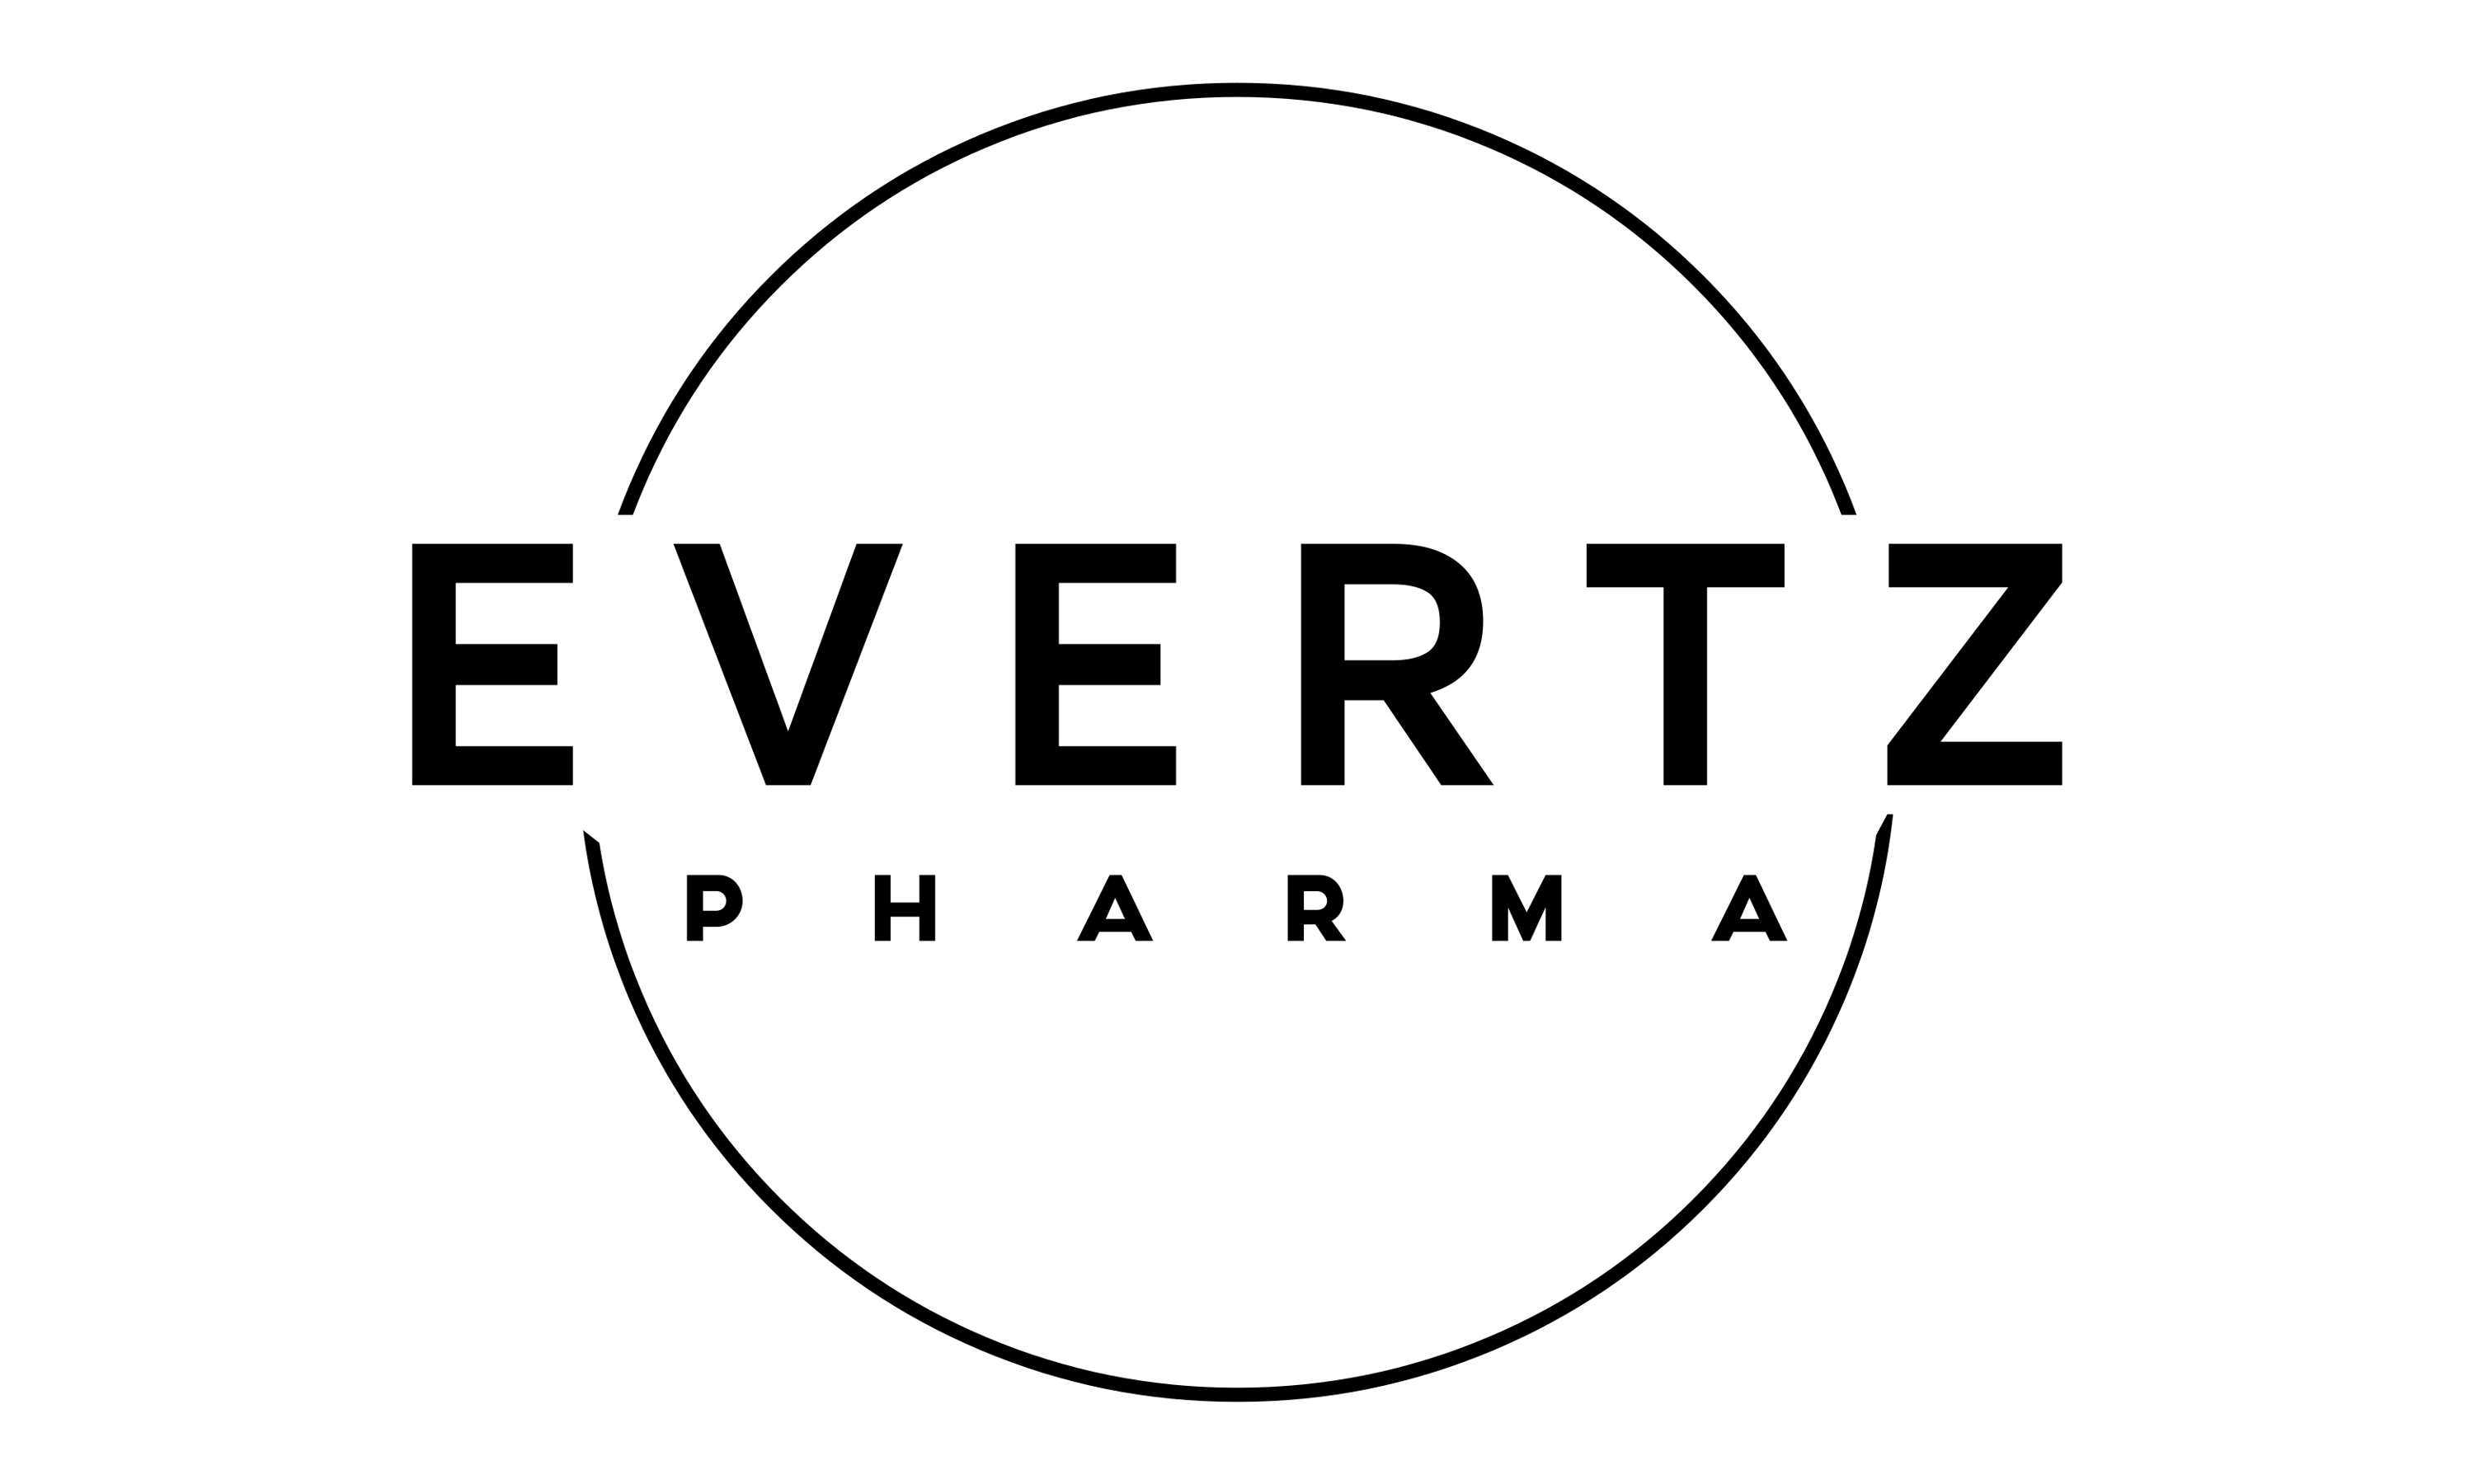 retixol evertz pharma